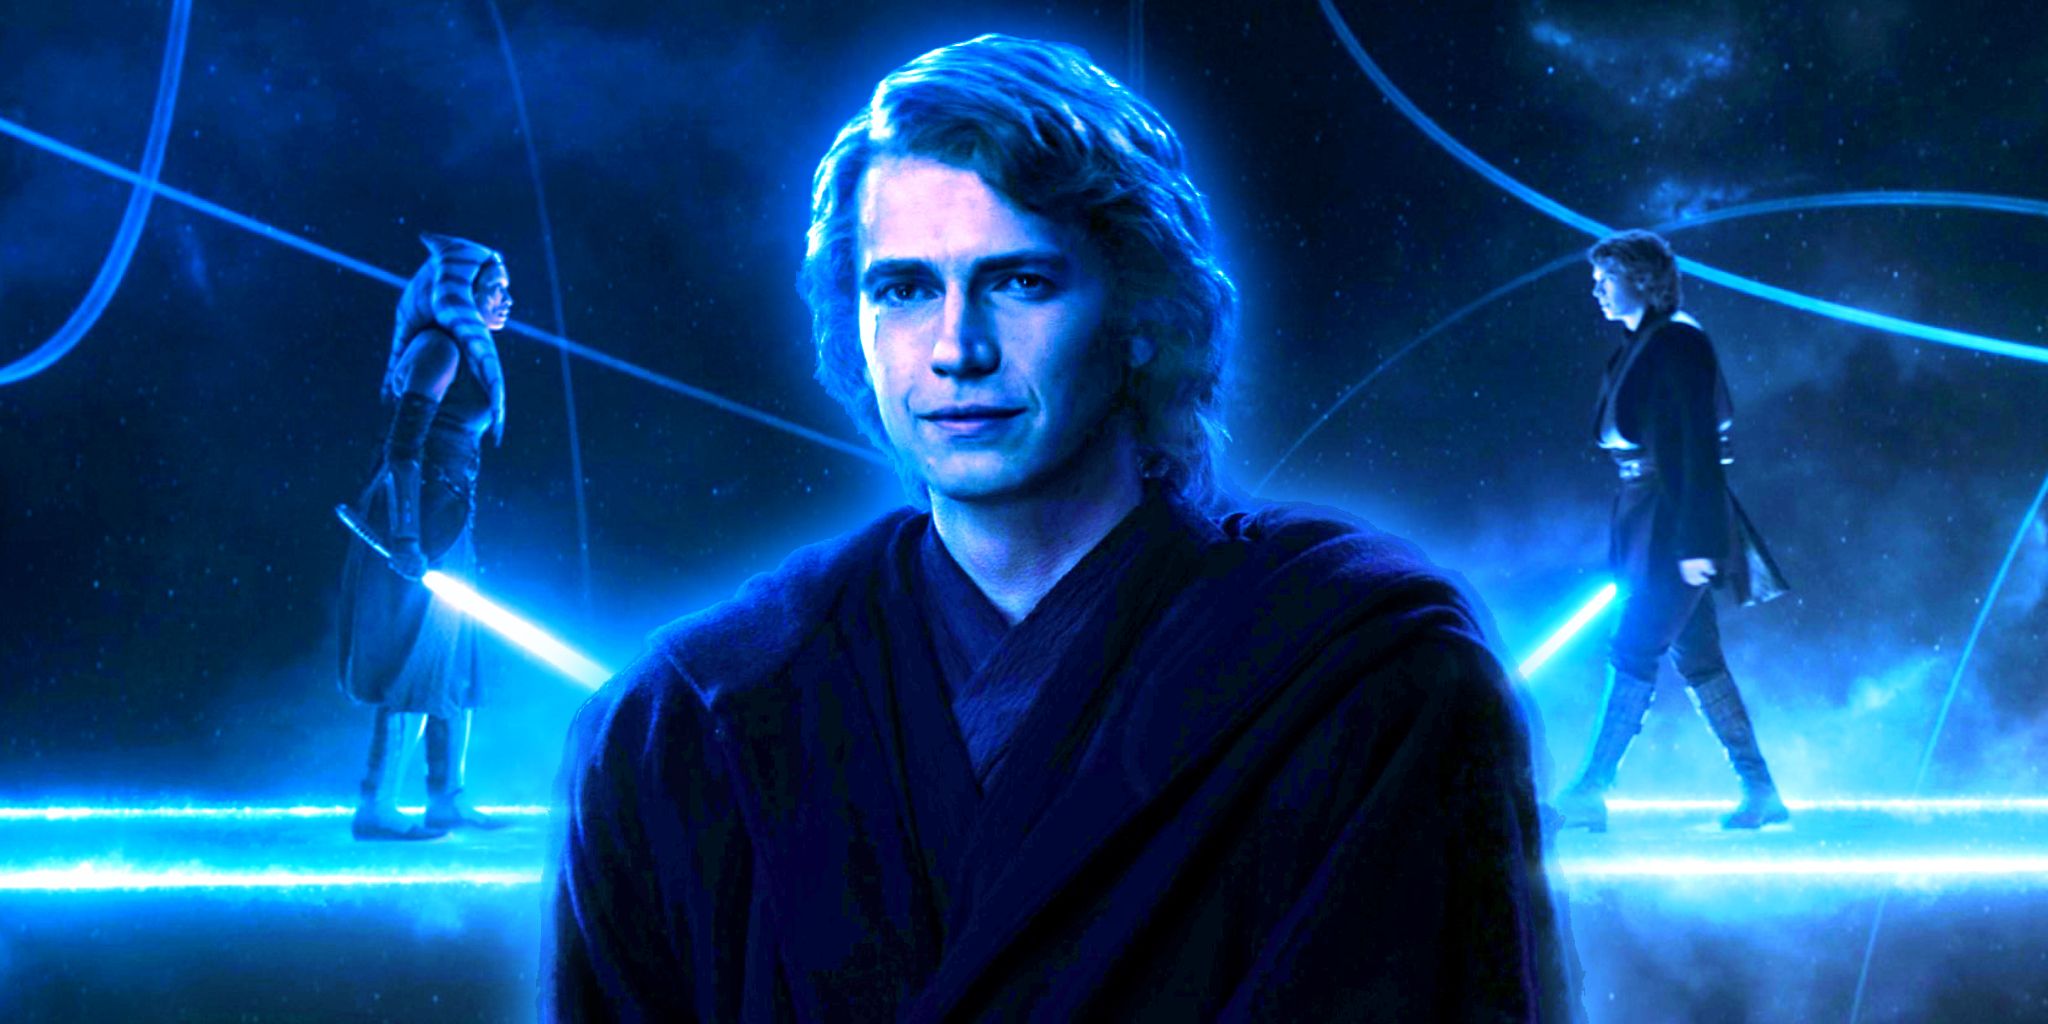 Hayden Christensen's Anakin Skywalker Return Was A "Bucket-List Item" He Didn't Even Know He Had